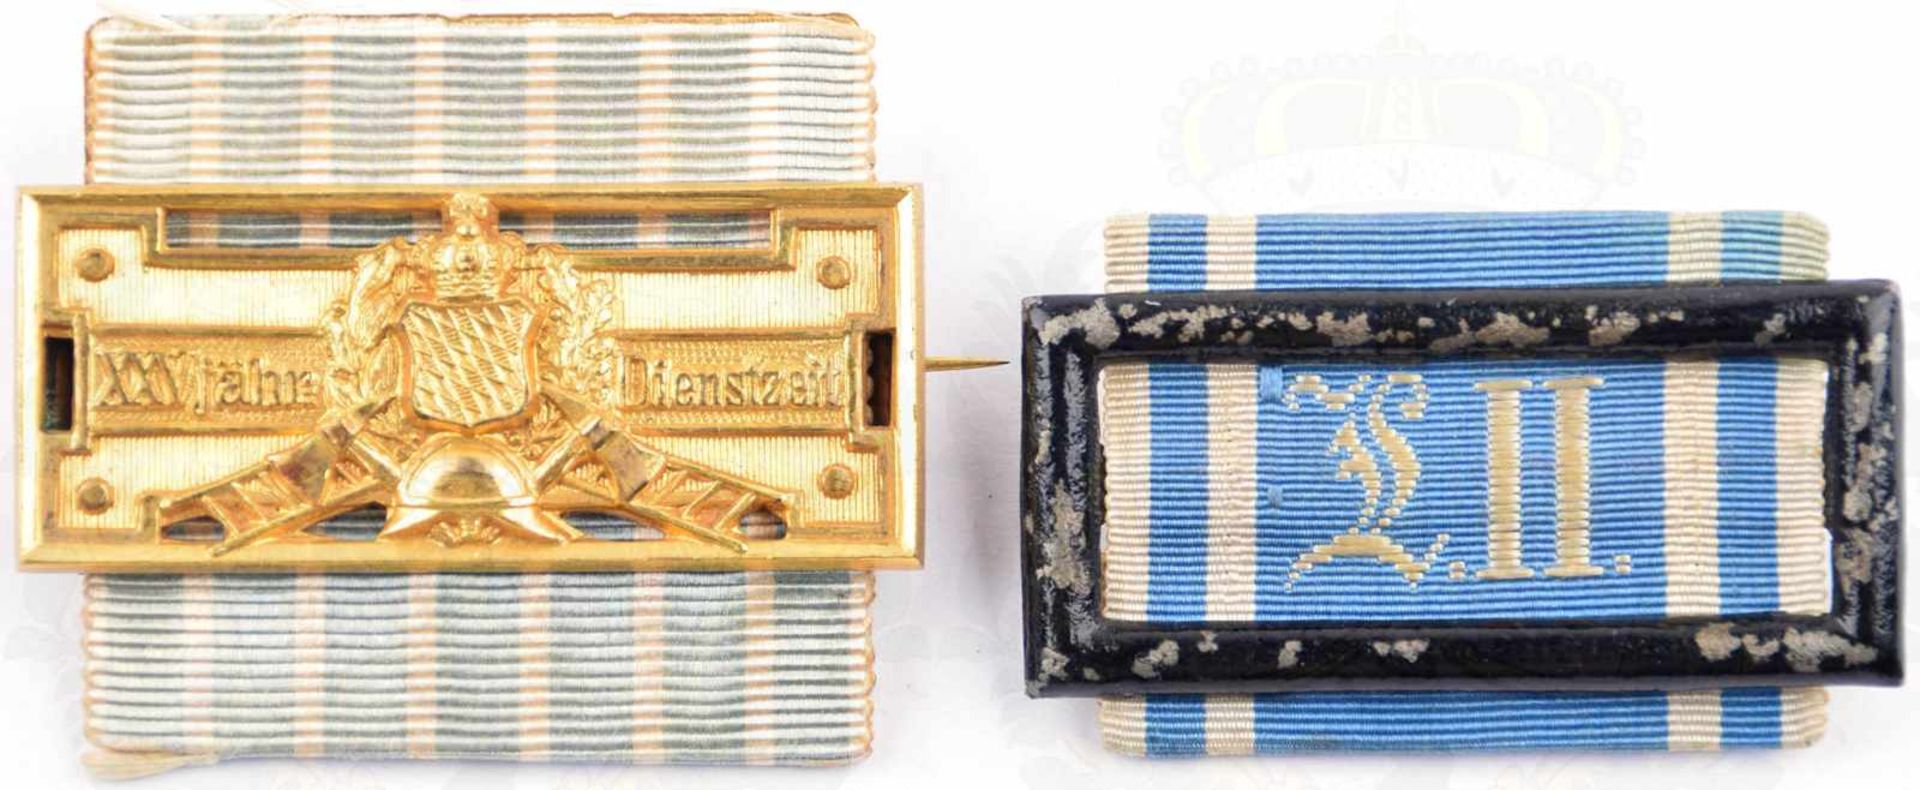 2 DIENSTAUSZEICHNUNGEN BAYERN, Landwehr-DA 2. Klasse; Feuerwehr-Ehrenzeichen 25 Jahre (1884-1918),